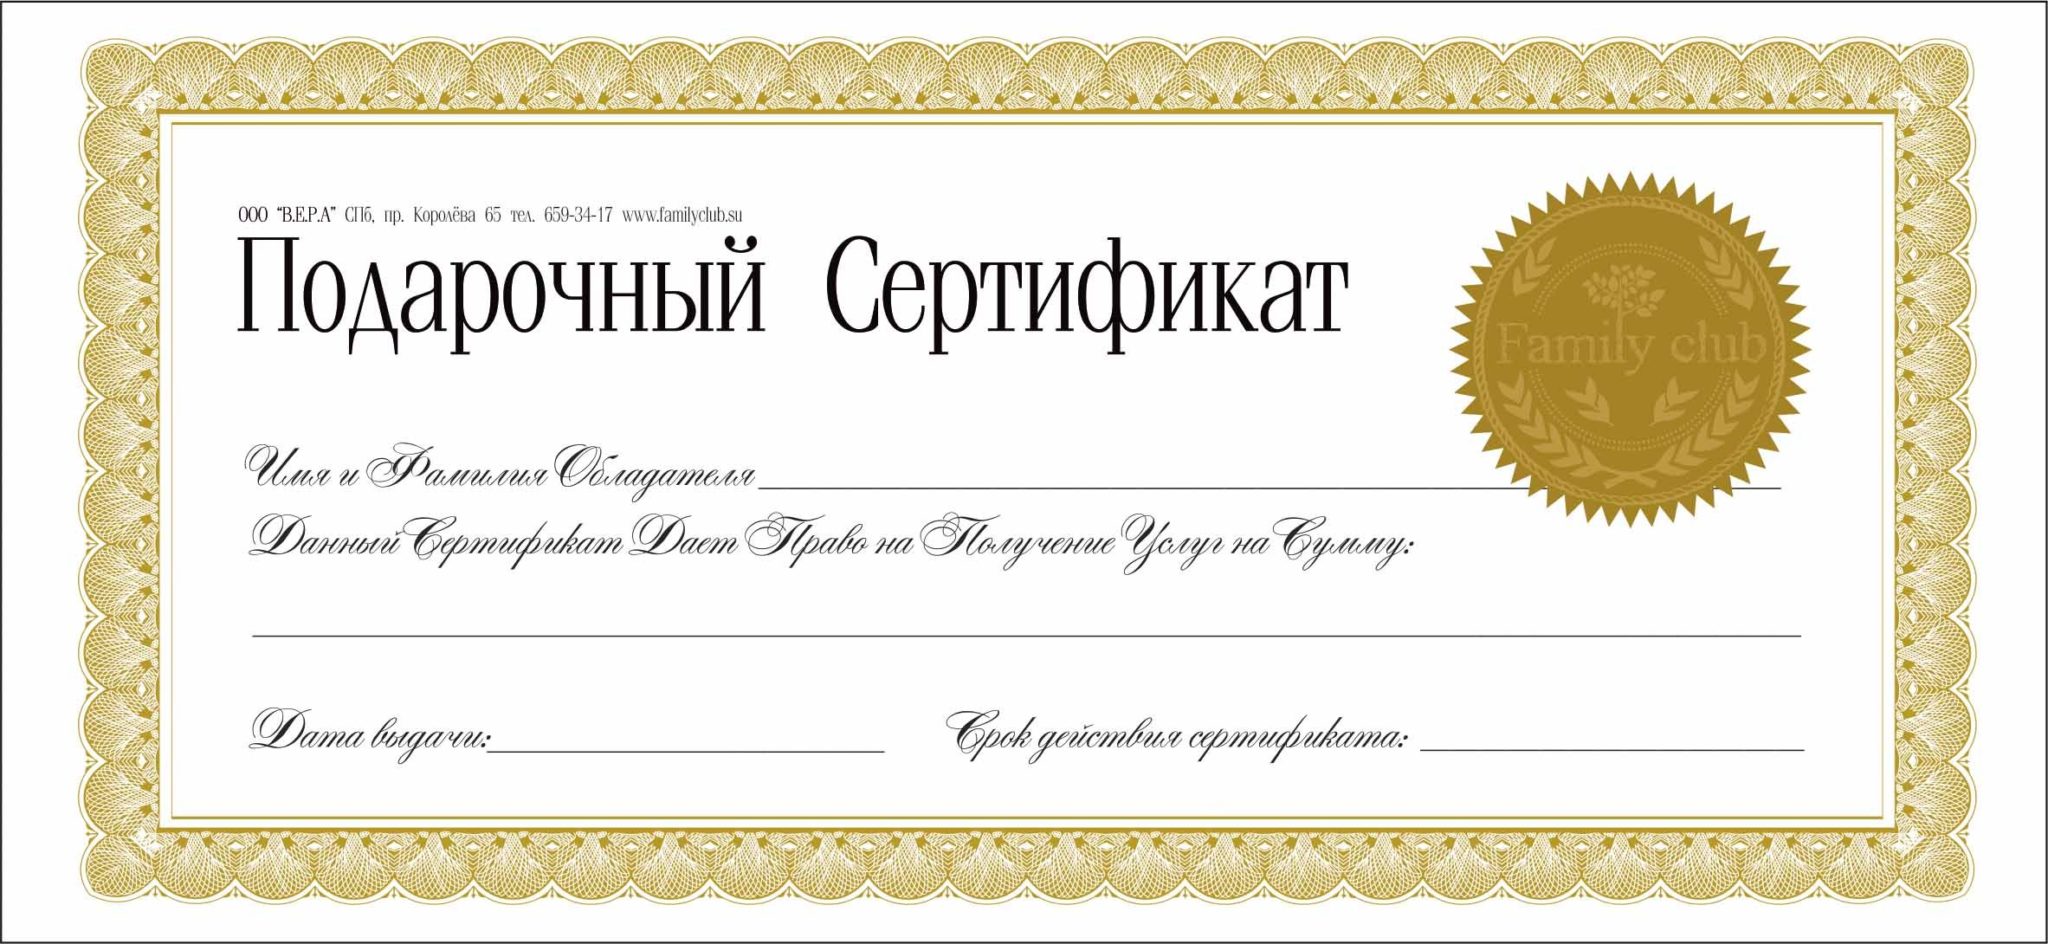 Подарочный сертификат образец